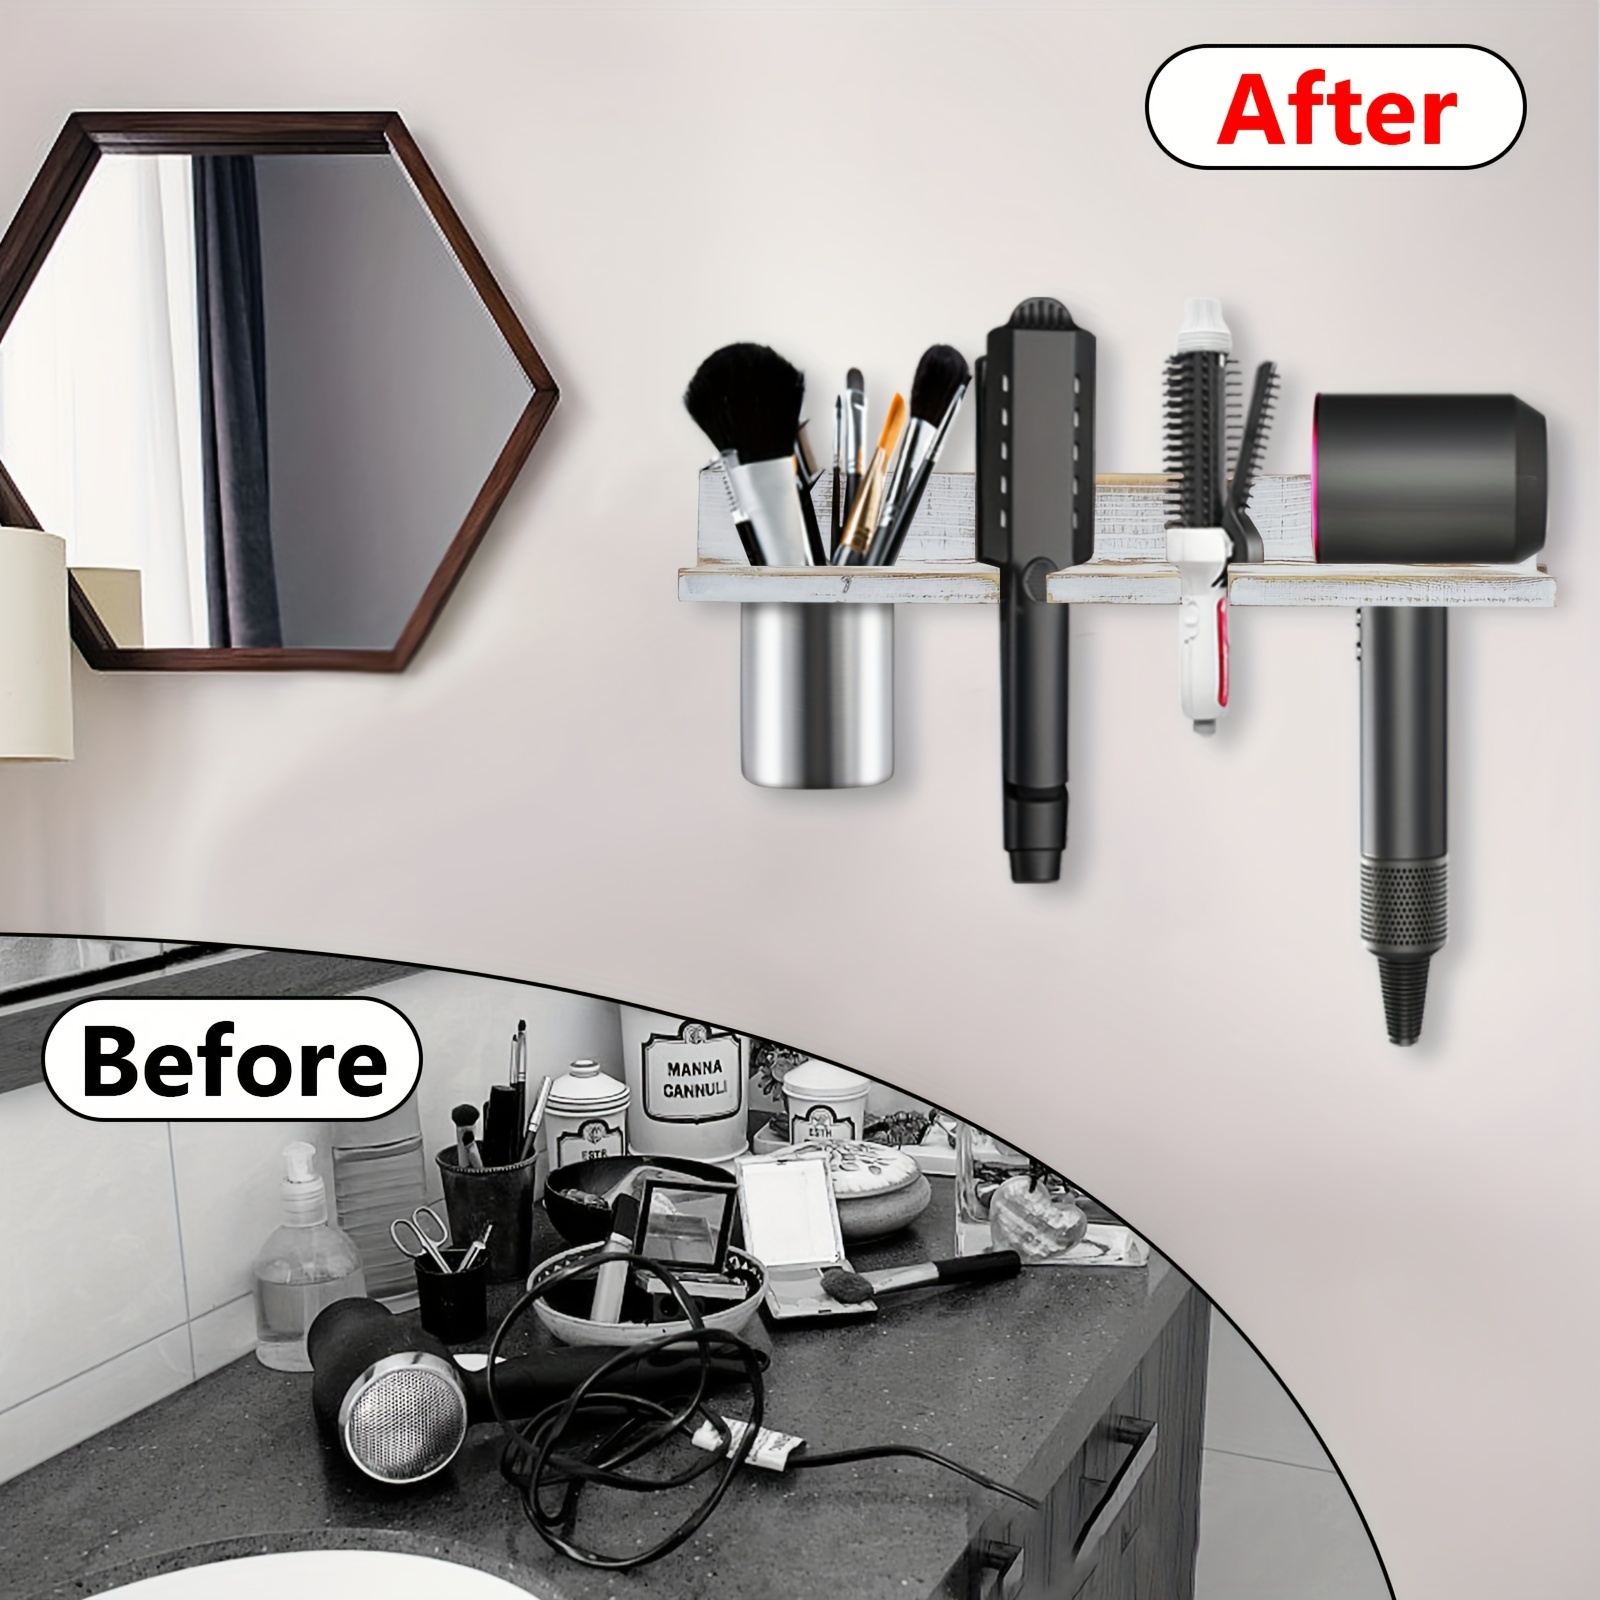 Dalanpa Soporte para secador de pelo montado en la pared, soporte adhesivo  para secador, organizador de herramientas para el cabello para baño